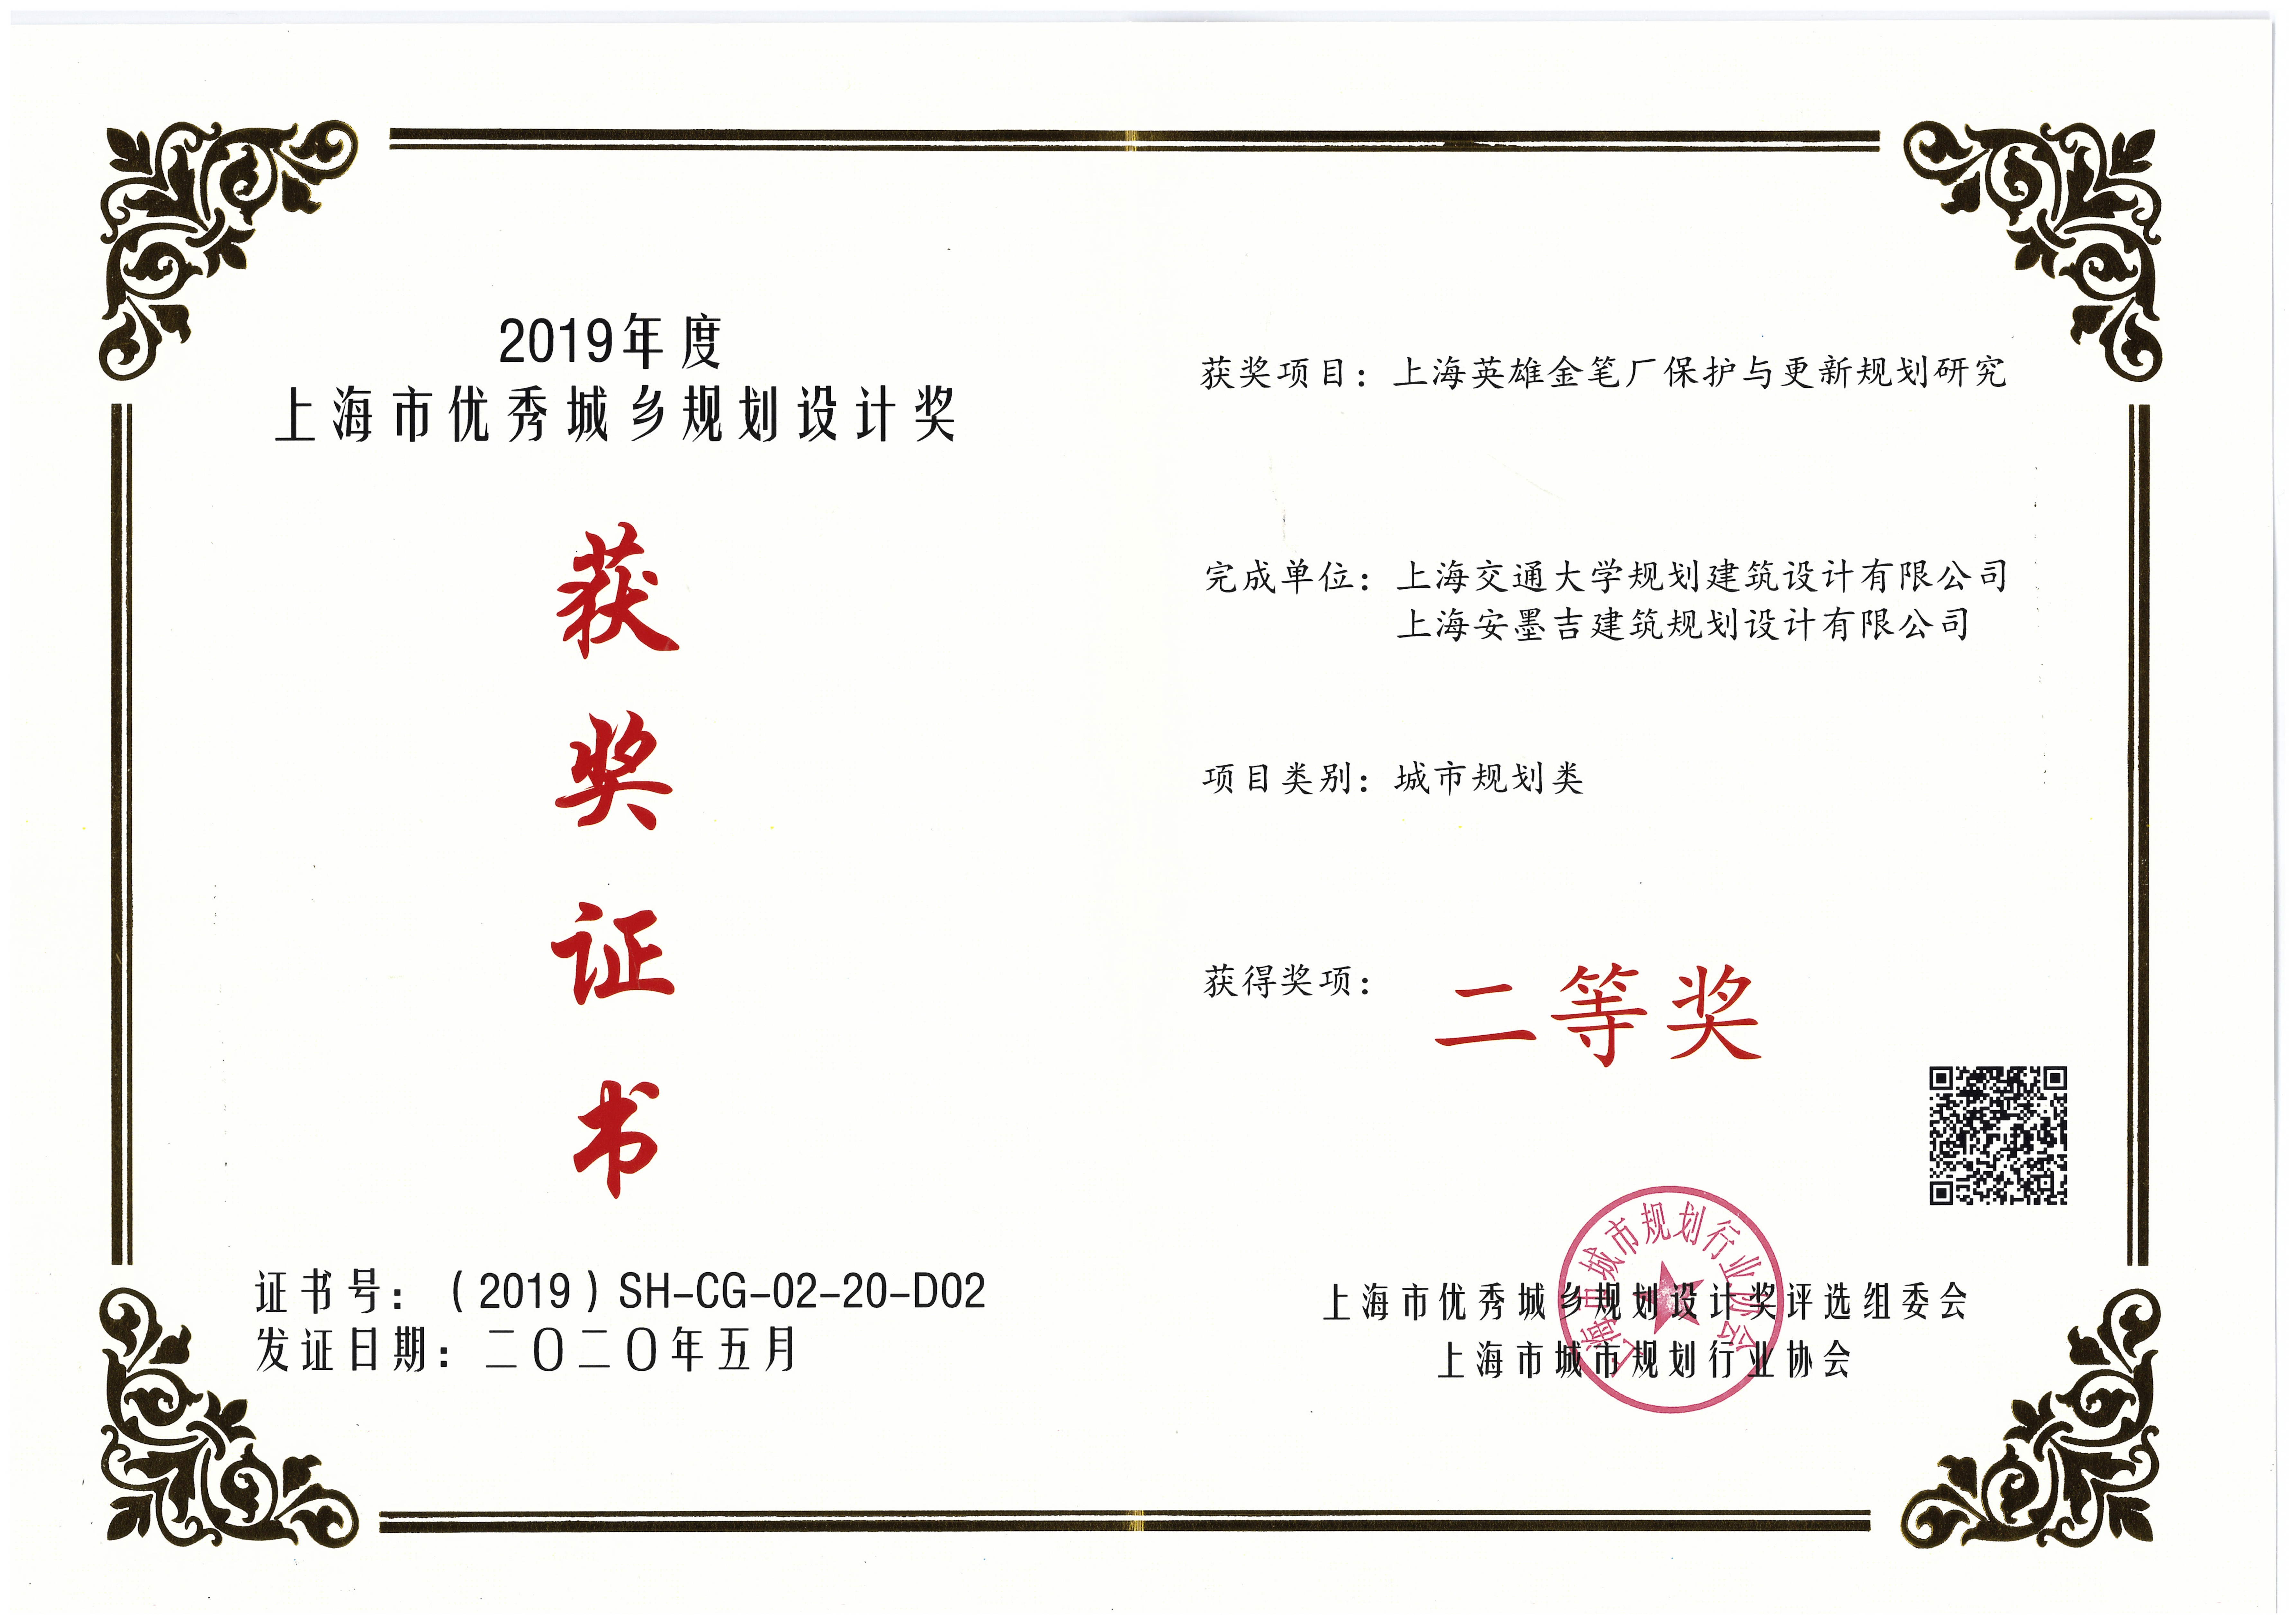 上海英雄金笔厂保护与更新规划研究-上海二等奖单位证书.jpg